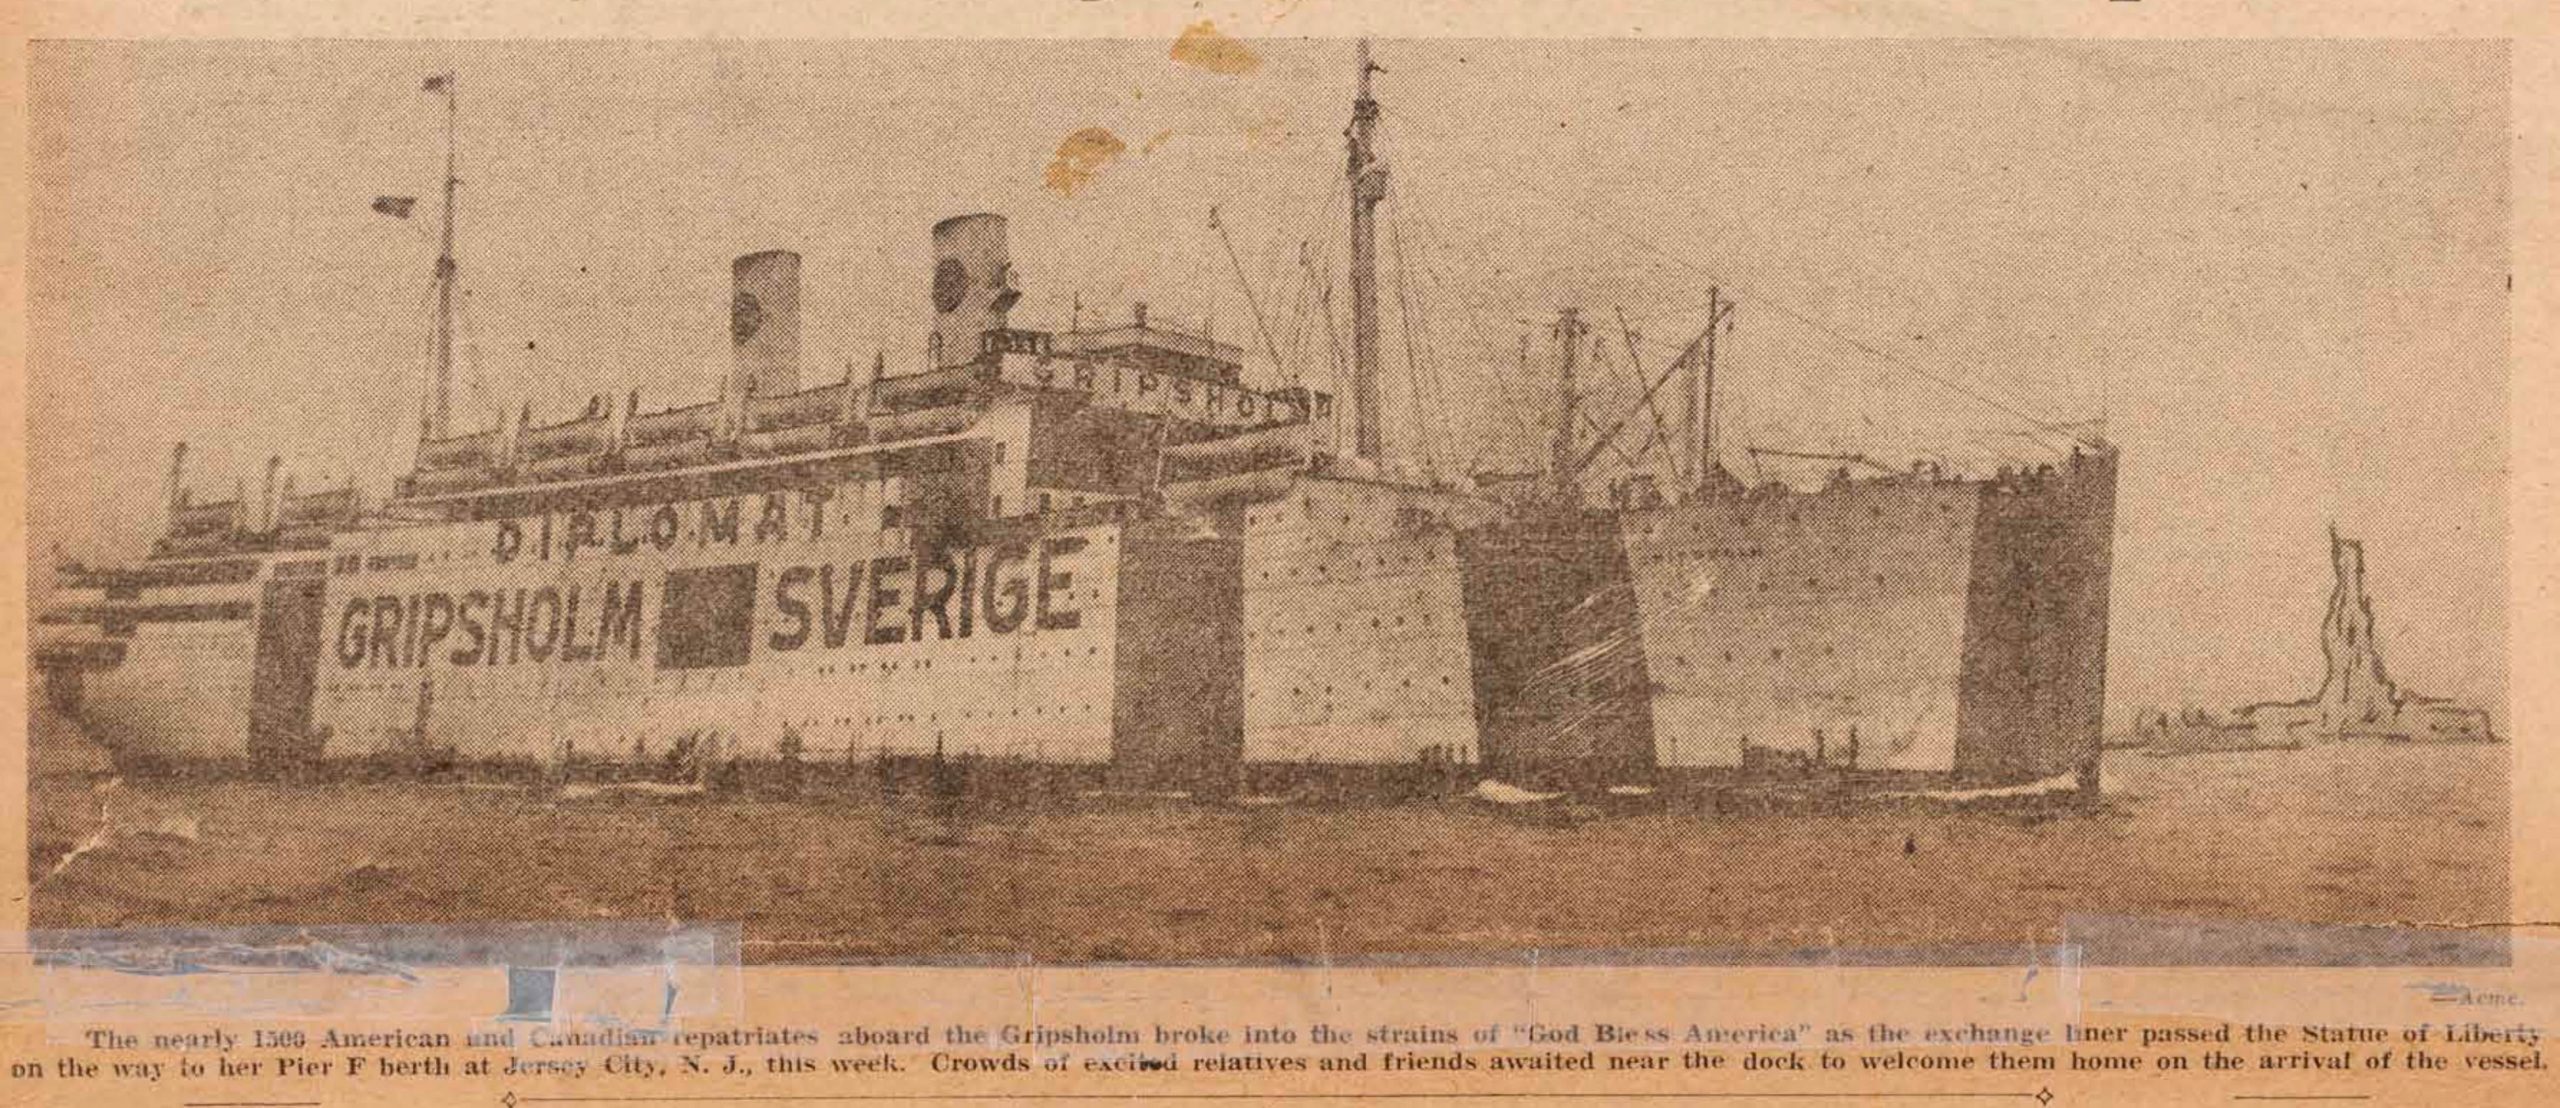 圖二 標示DIPLOMAT的瑞典籍Gripsholm號客輪，在二戰期間共執行人員交換及遣返12次。圖為刊登於1942年12月3日The Shanghai Evening Post上的Gripsholm號客輪圖片。